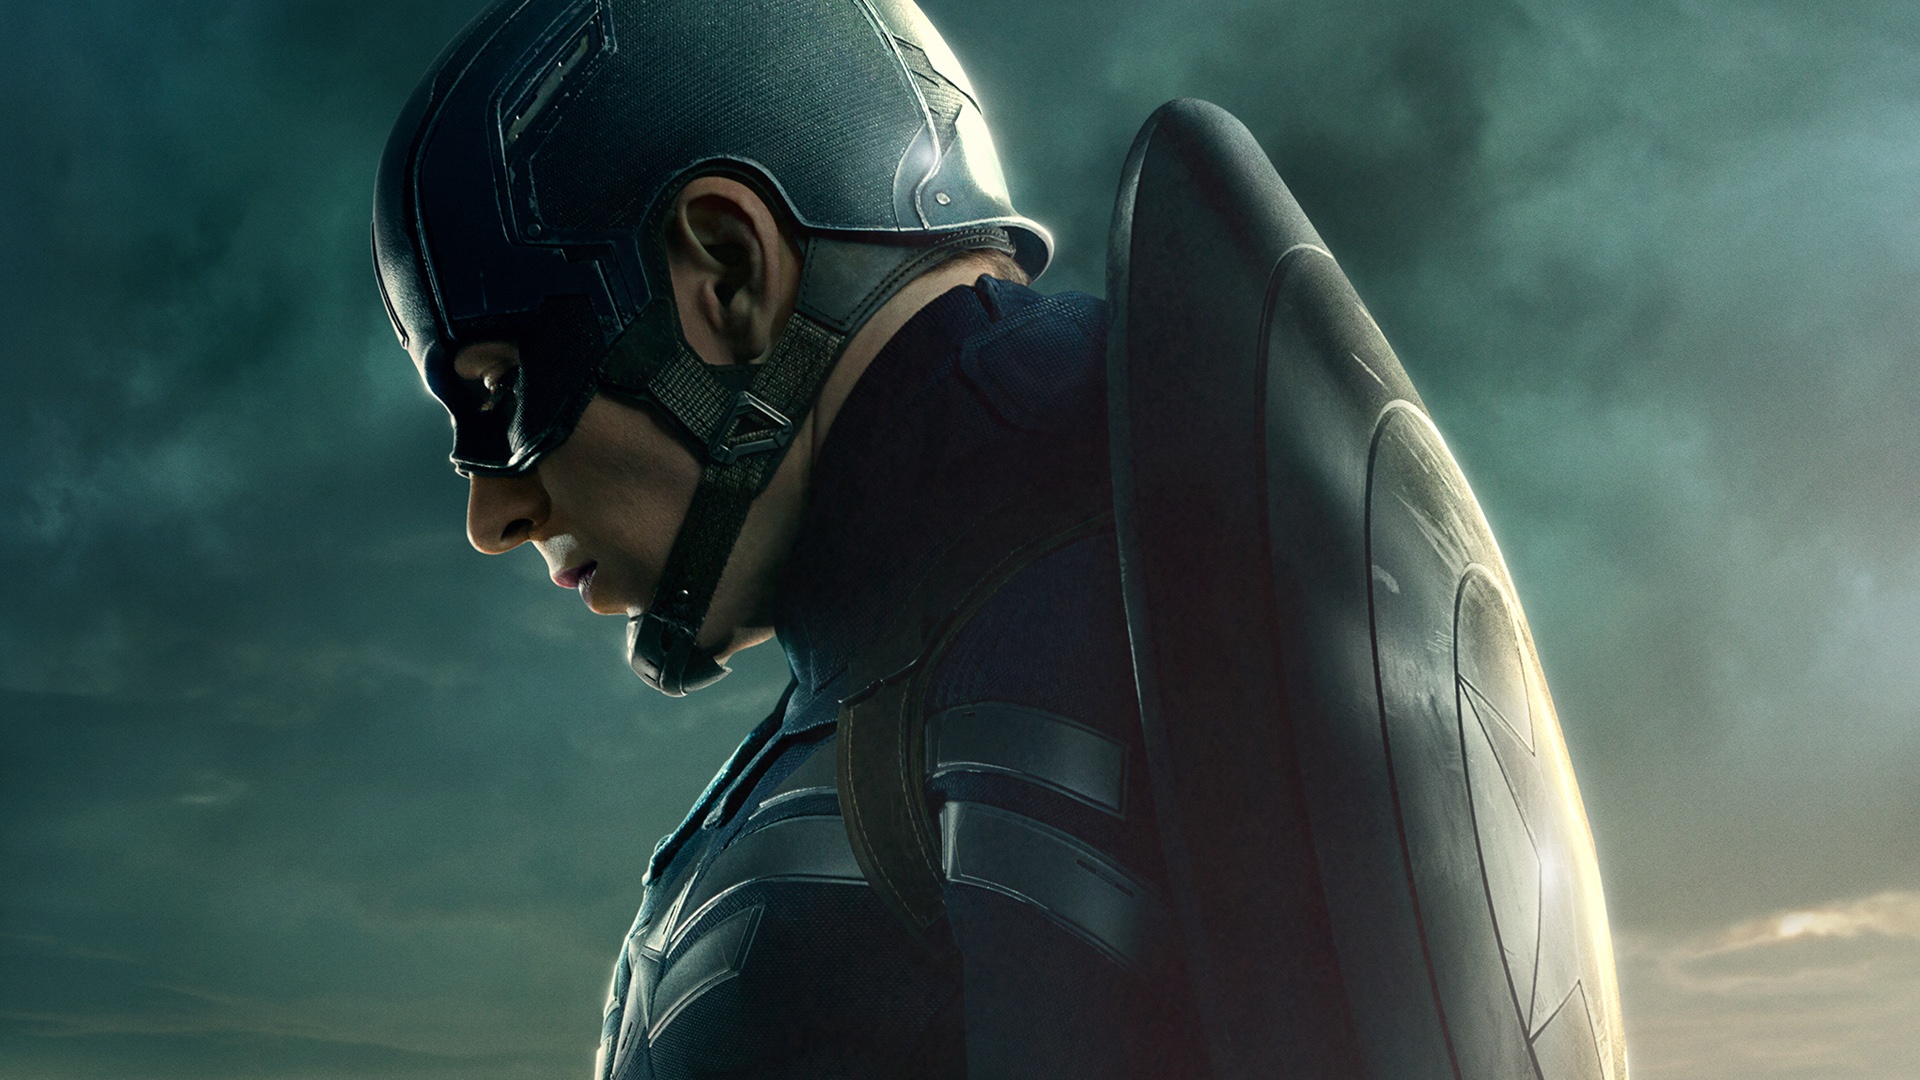 캡틴 아메리카 바탕 화면 배경,소설 속의 인물,슈퍼 히어로,cg 삽화,디지털 합성,캡틴 아메리카